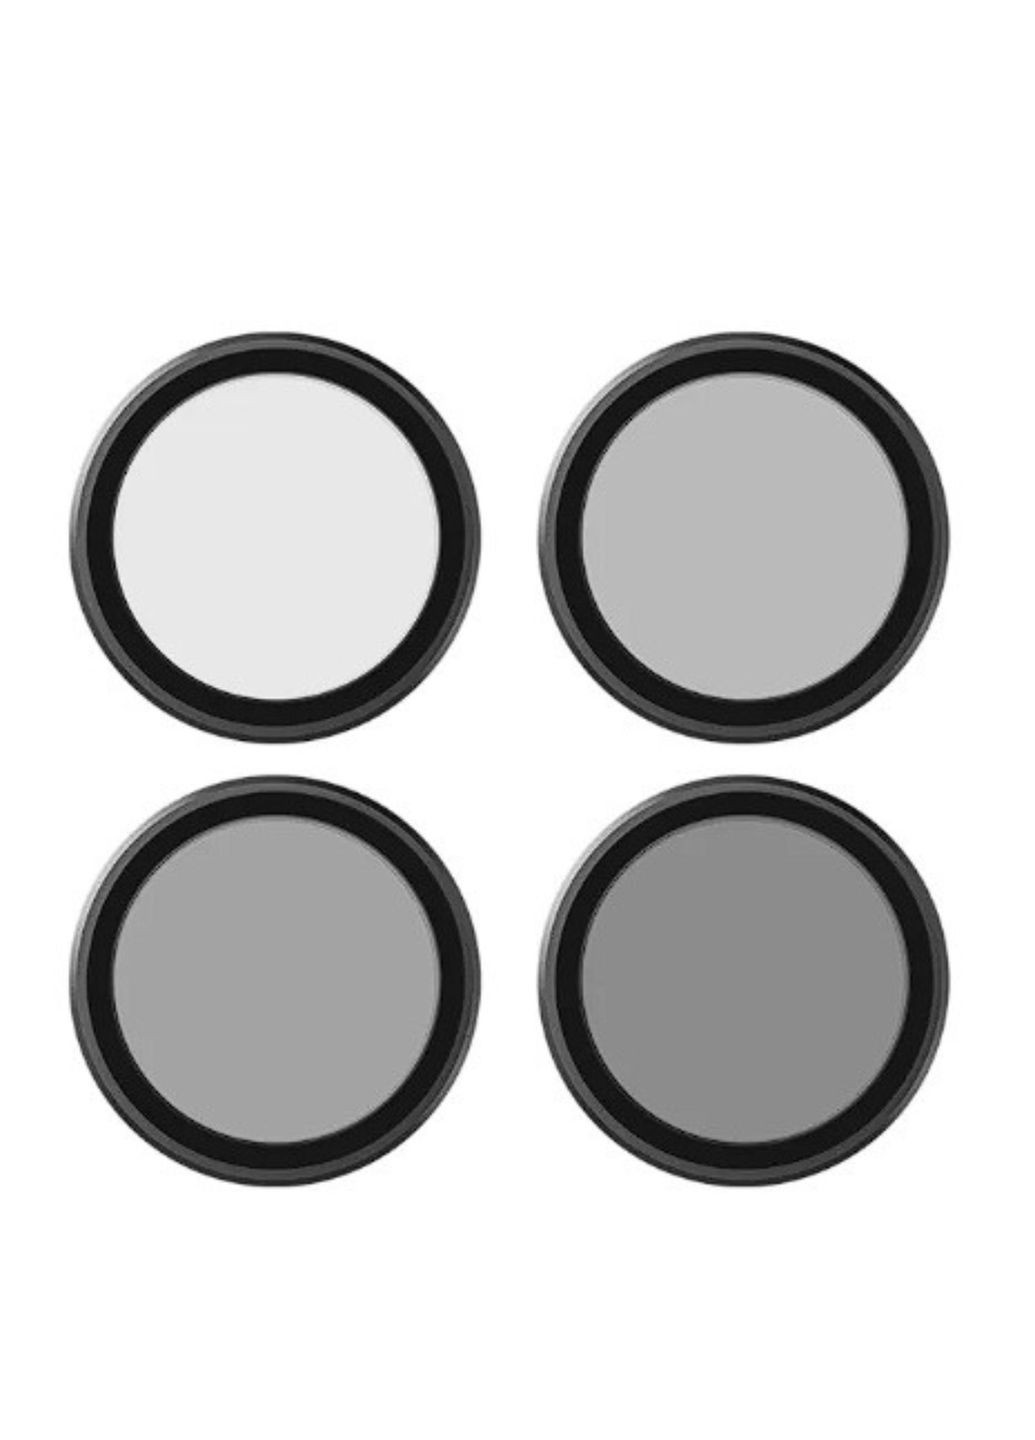 Набор фильтров для dji action 3/4 cpl/nd8/nd16/nd32 telesin, светофильтры для экшн-камеры No Brand (284725858)